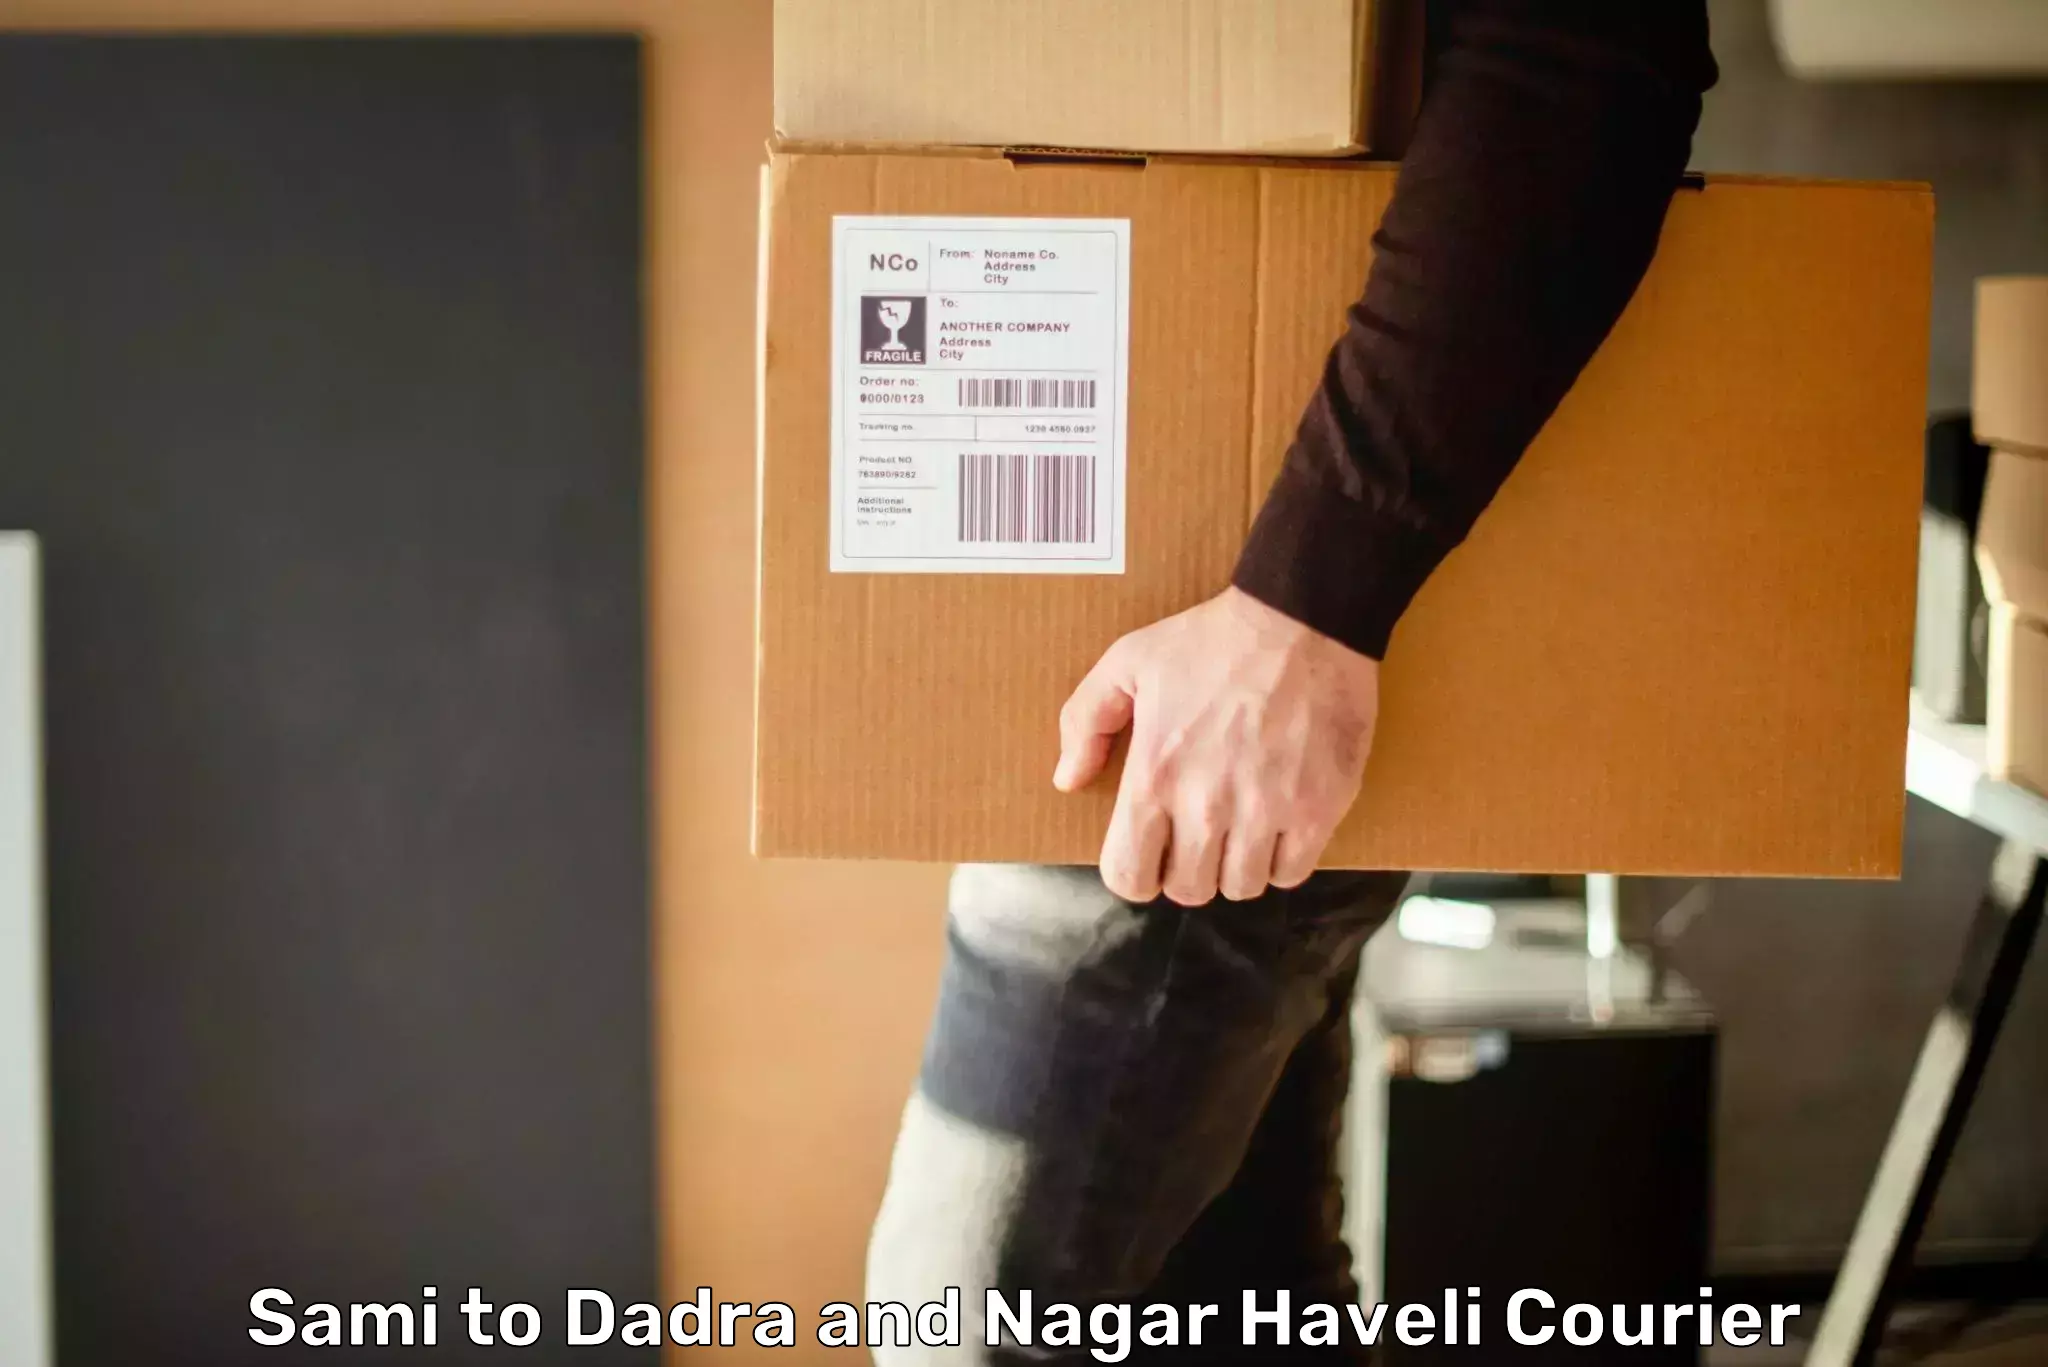 24-hour courier service Sami to Dadra and Nagar Haveli